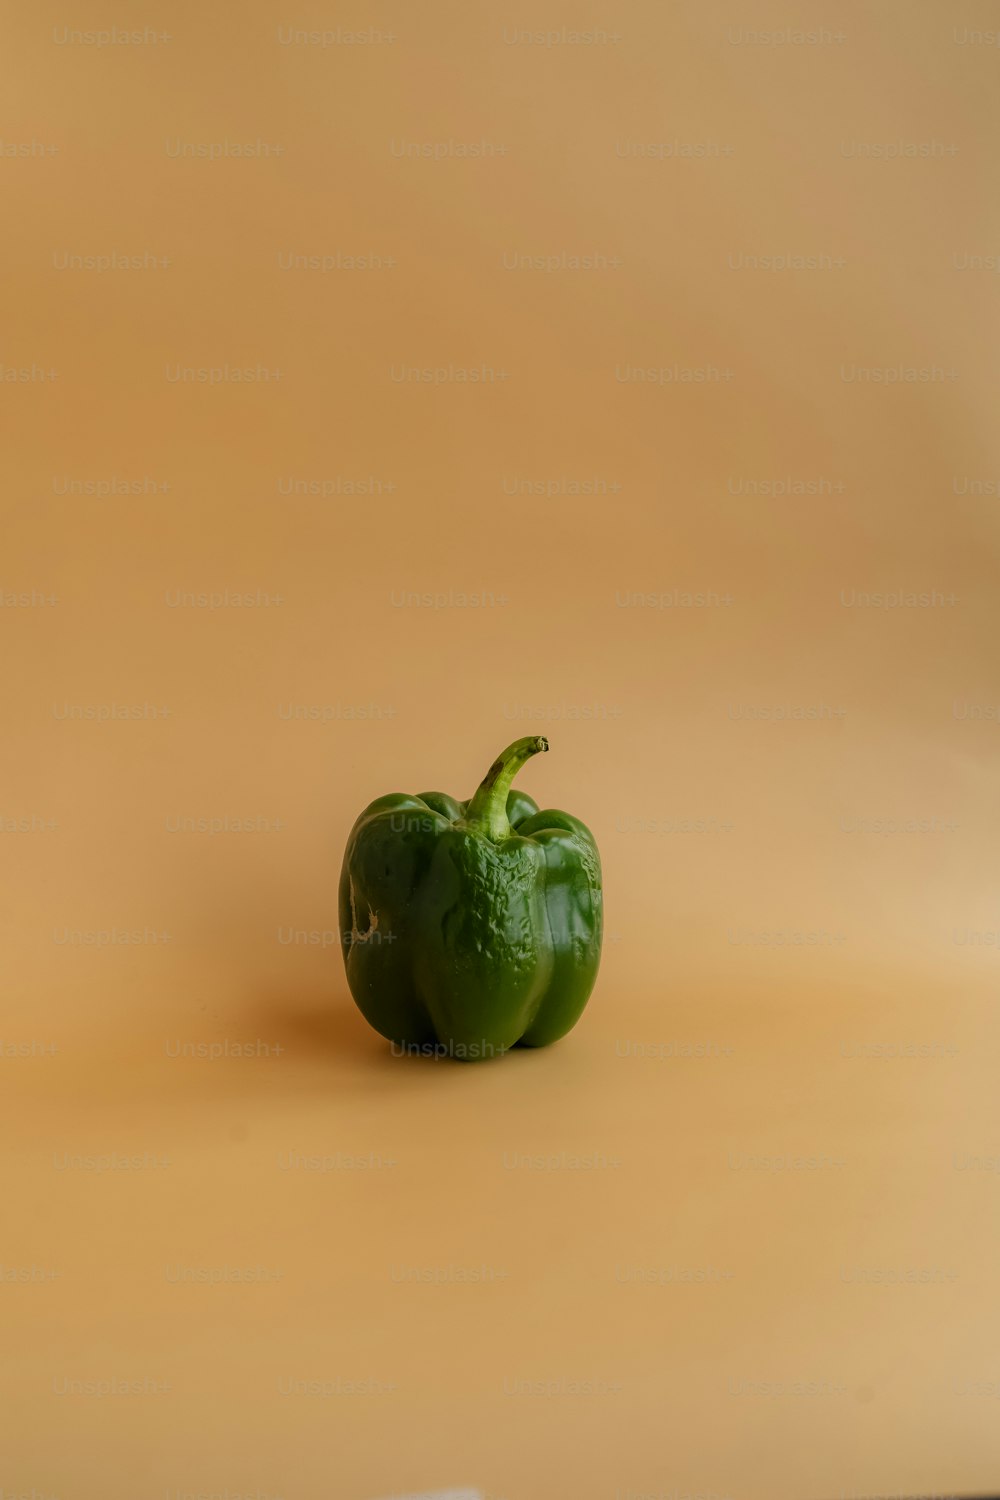 eine grüne Paprika auf weißer Oberfläche